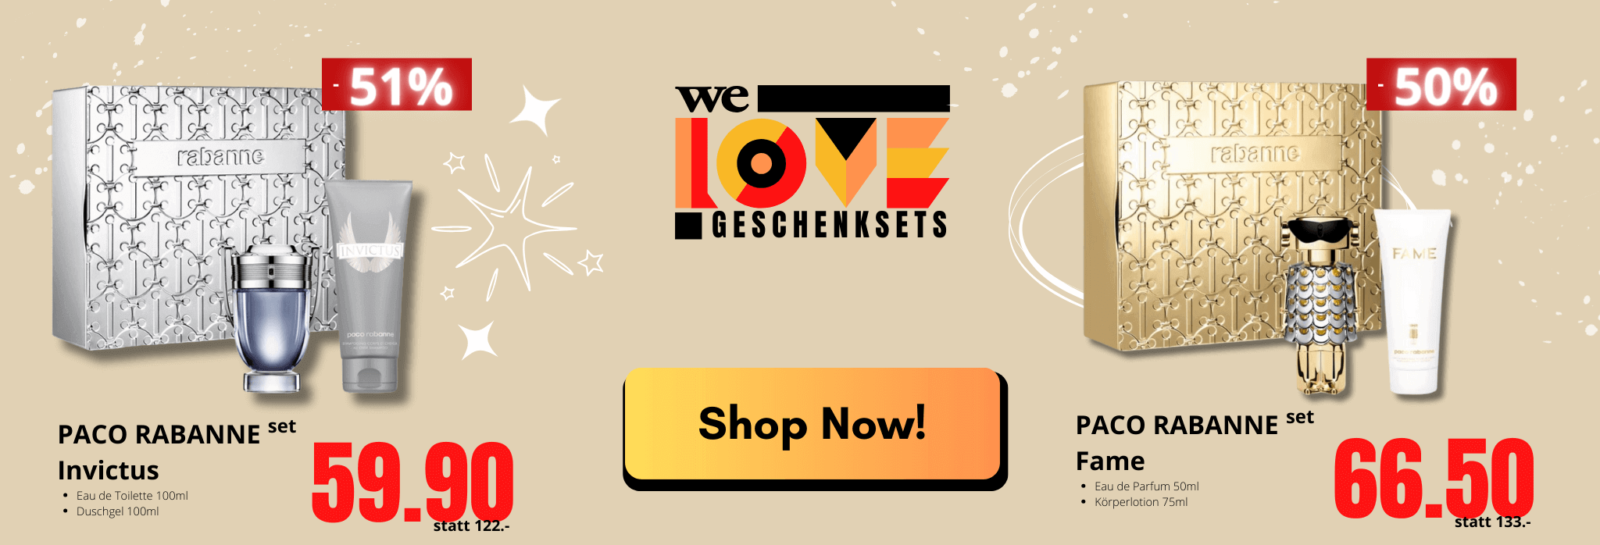 We Love Geschenksets - Free Shop Swiss Aktionen